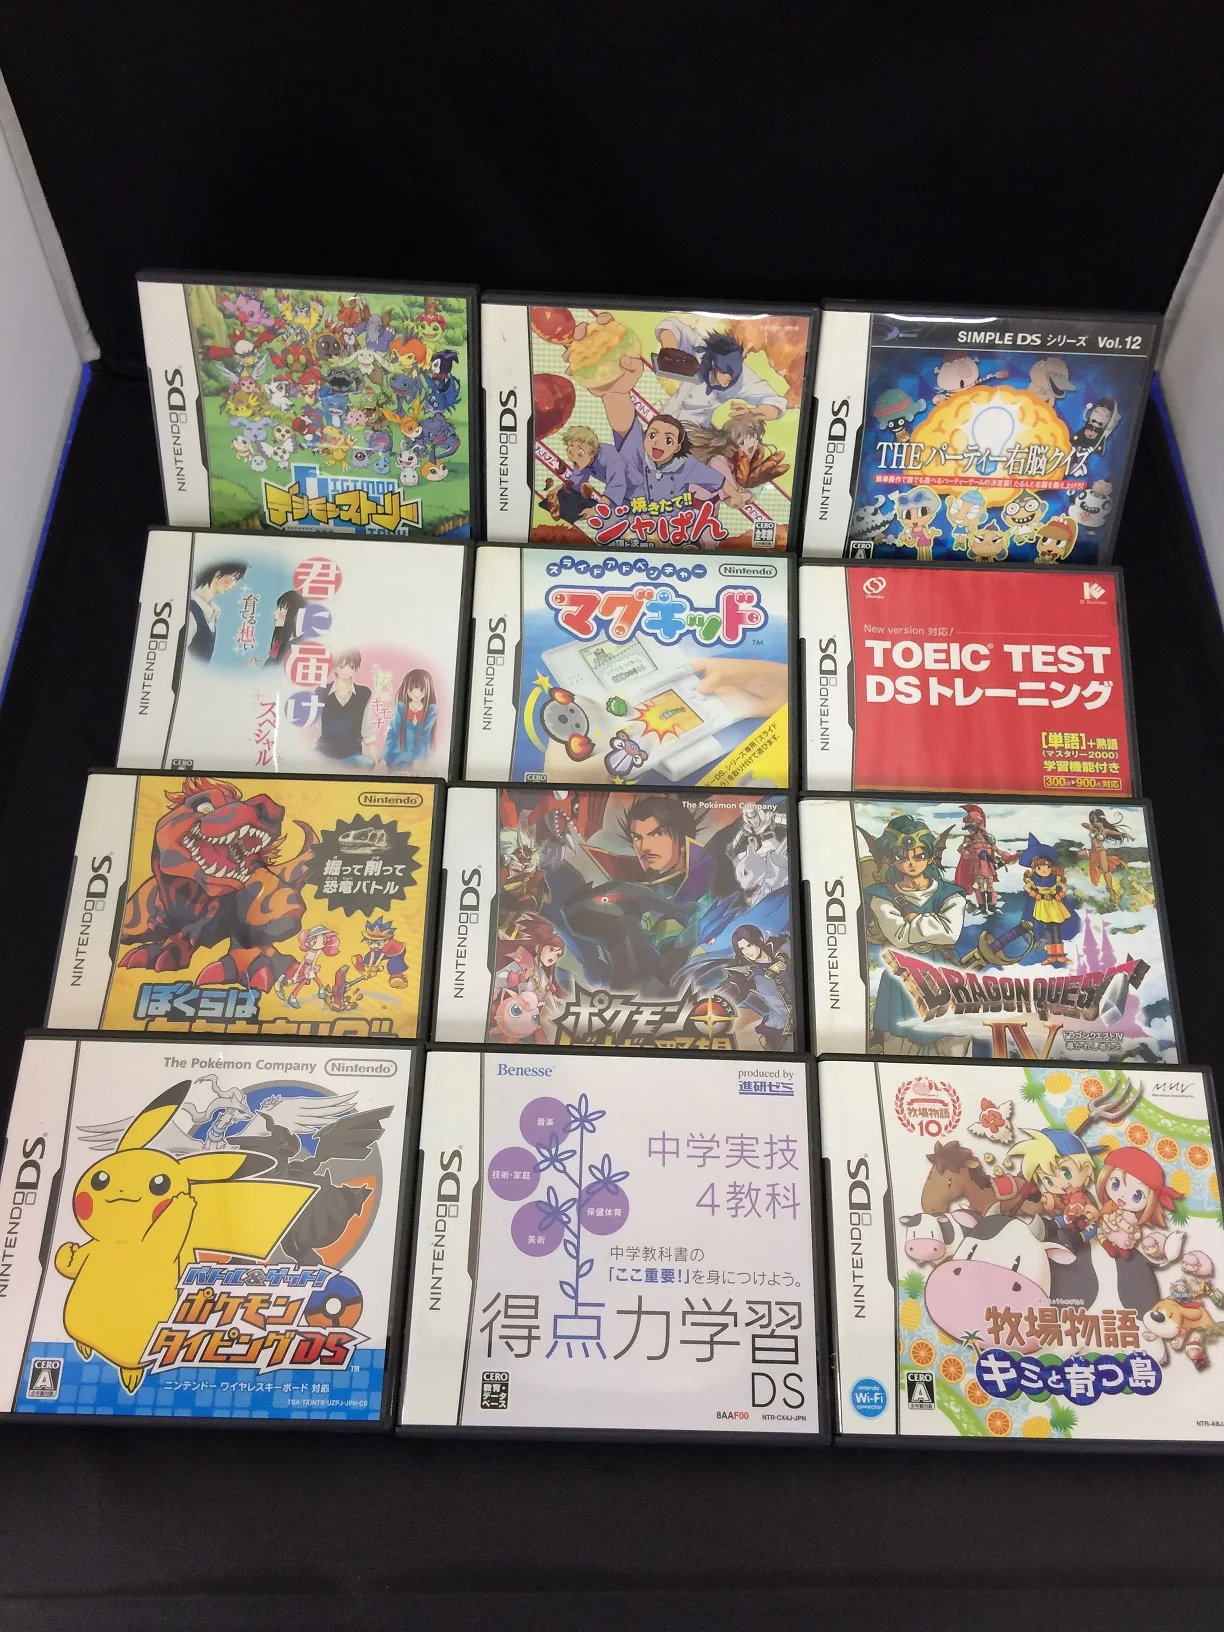 Mugen Kouro (Nintendo DS, 2009) - Japanese Version for sale online